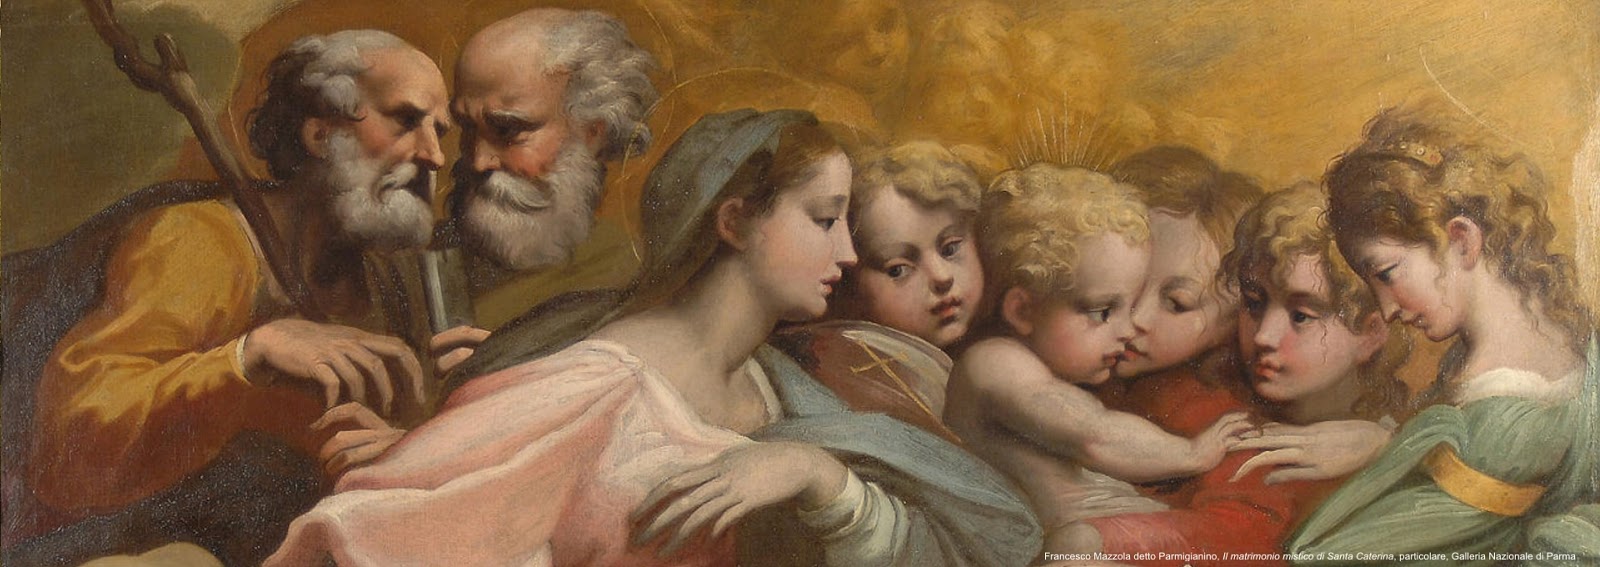 Parmigianino-1503-1540 (41).jpg